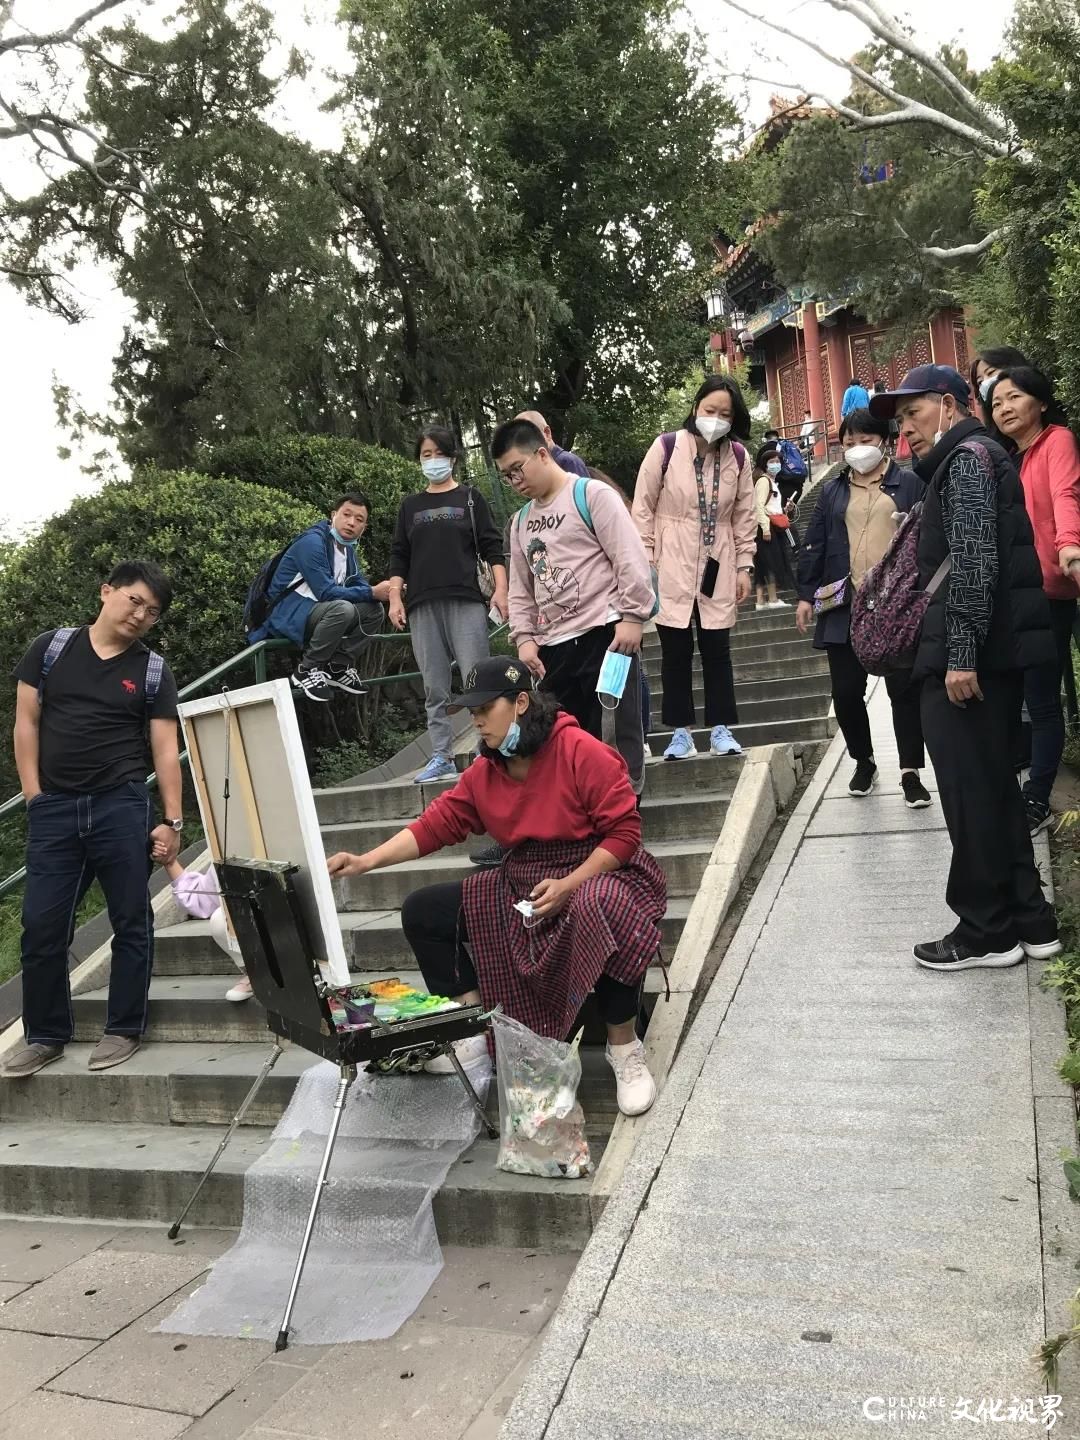 夏的葵园，秋的皇城——青年画家袁俐2020年在北京的写生经历自述